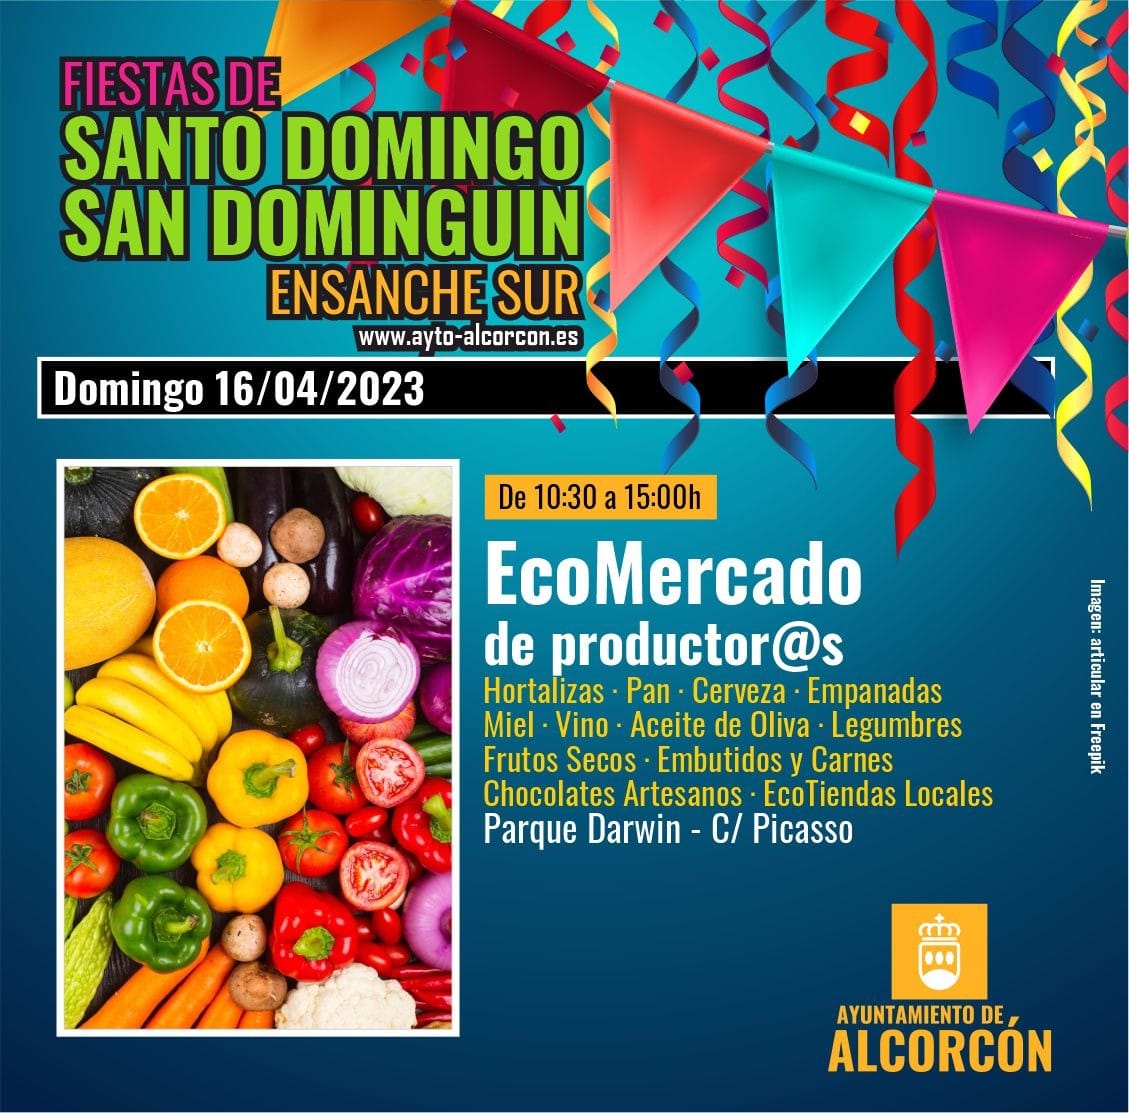 Domingo de Ecomercado y paella popular en Alcorcón